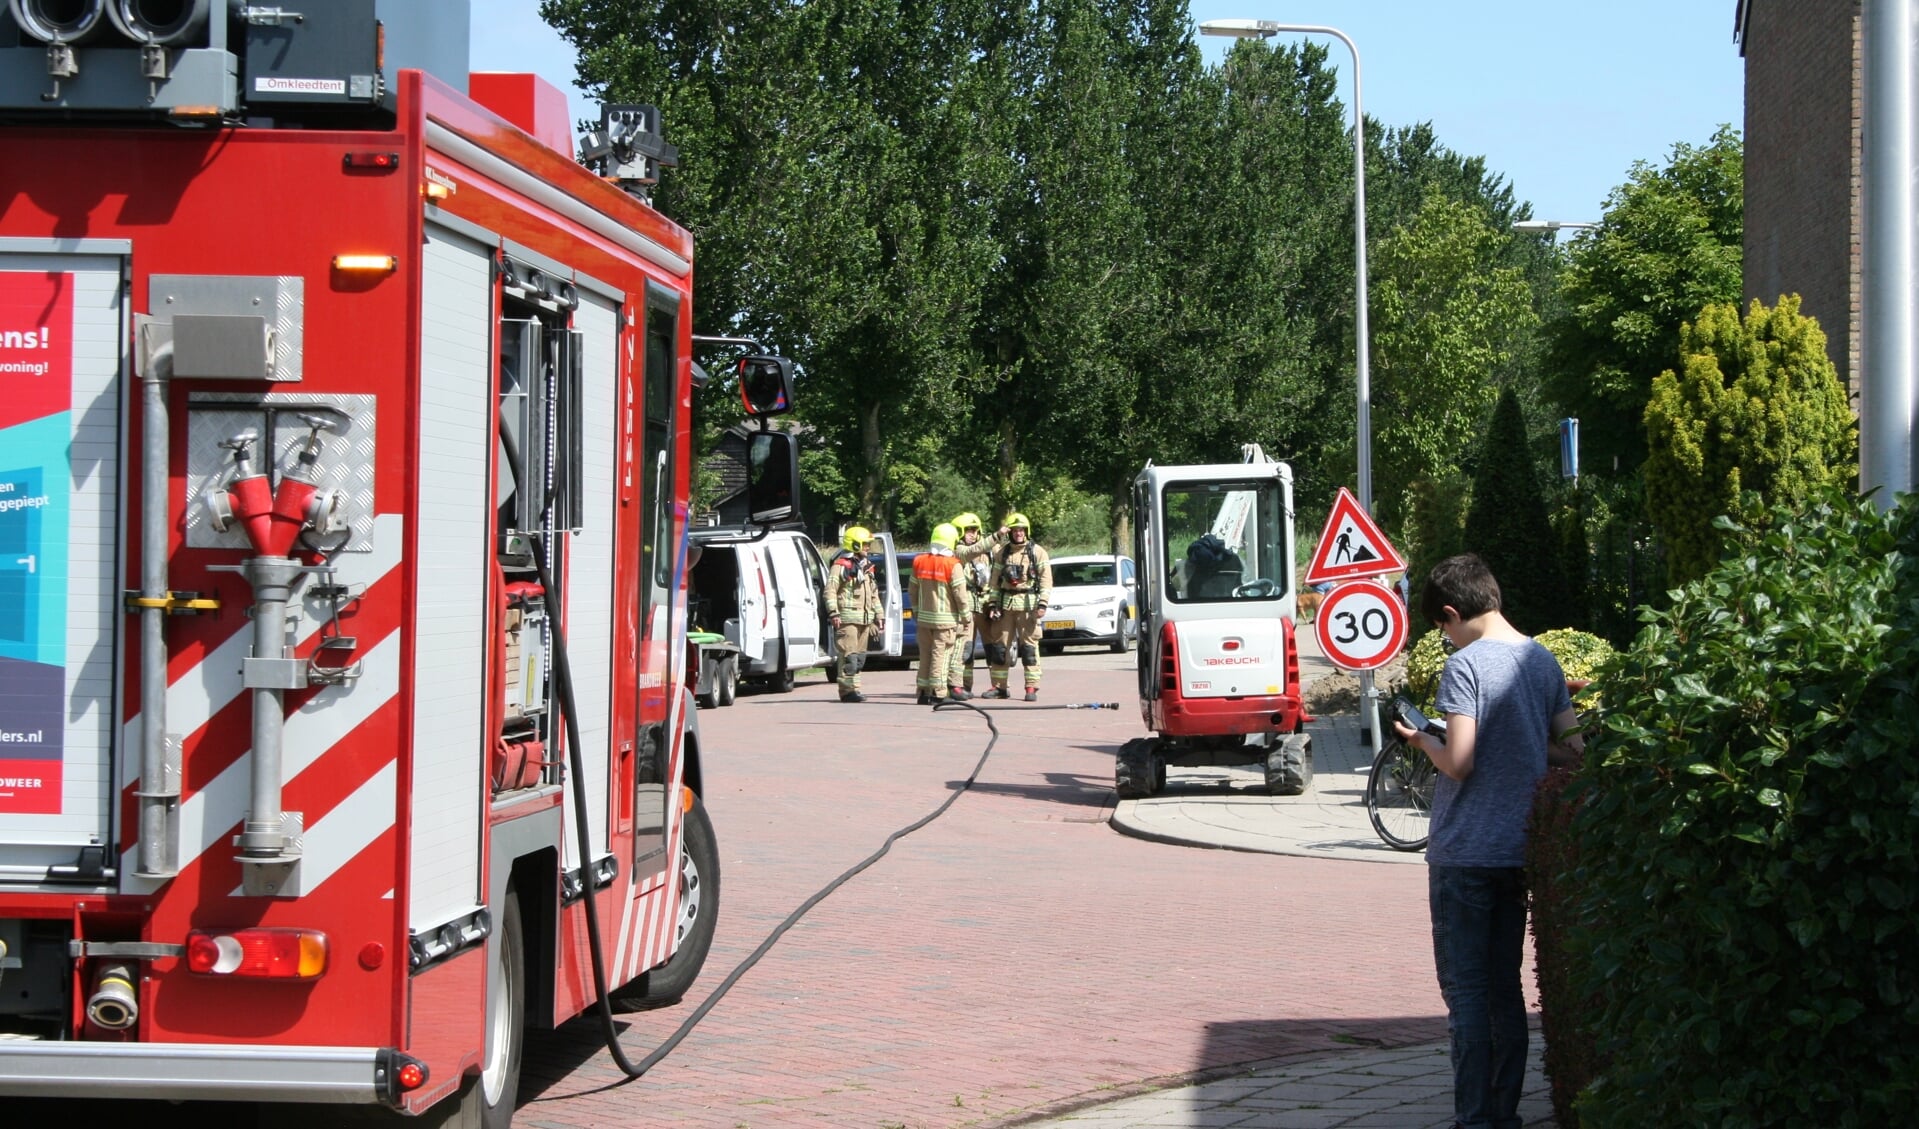 De brandweer moet regelmatig uitrukken voor een gaslekkage na graafwerkzaamheden voor glasvezel, zoals onlangs in de Groene Zoom in Sommelsdijk (Archieffoto: AS Media).